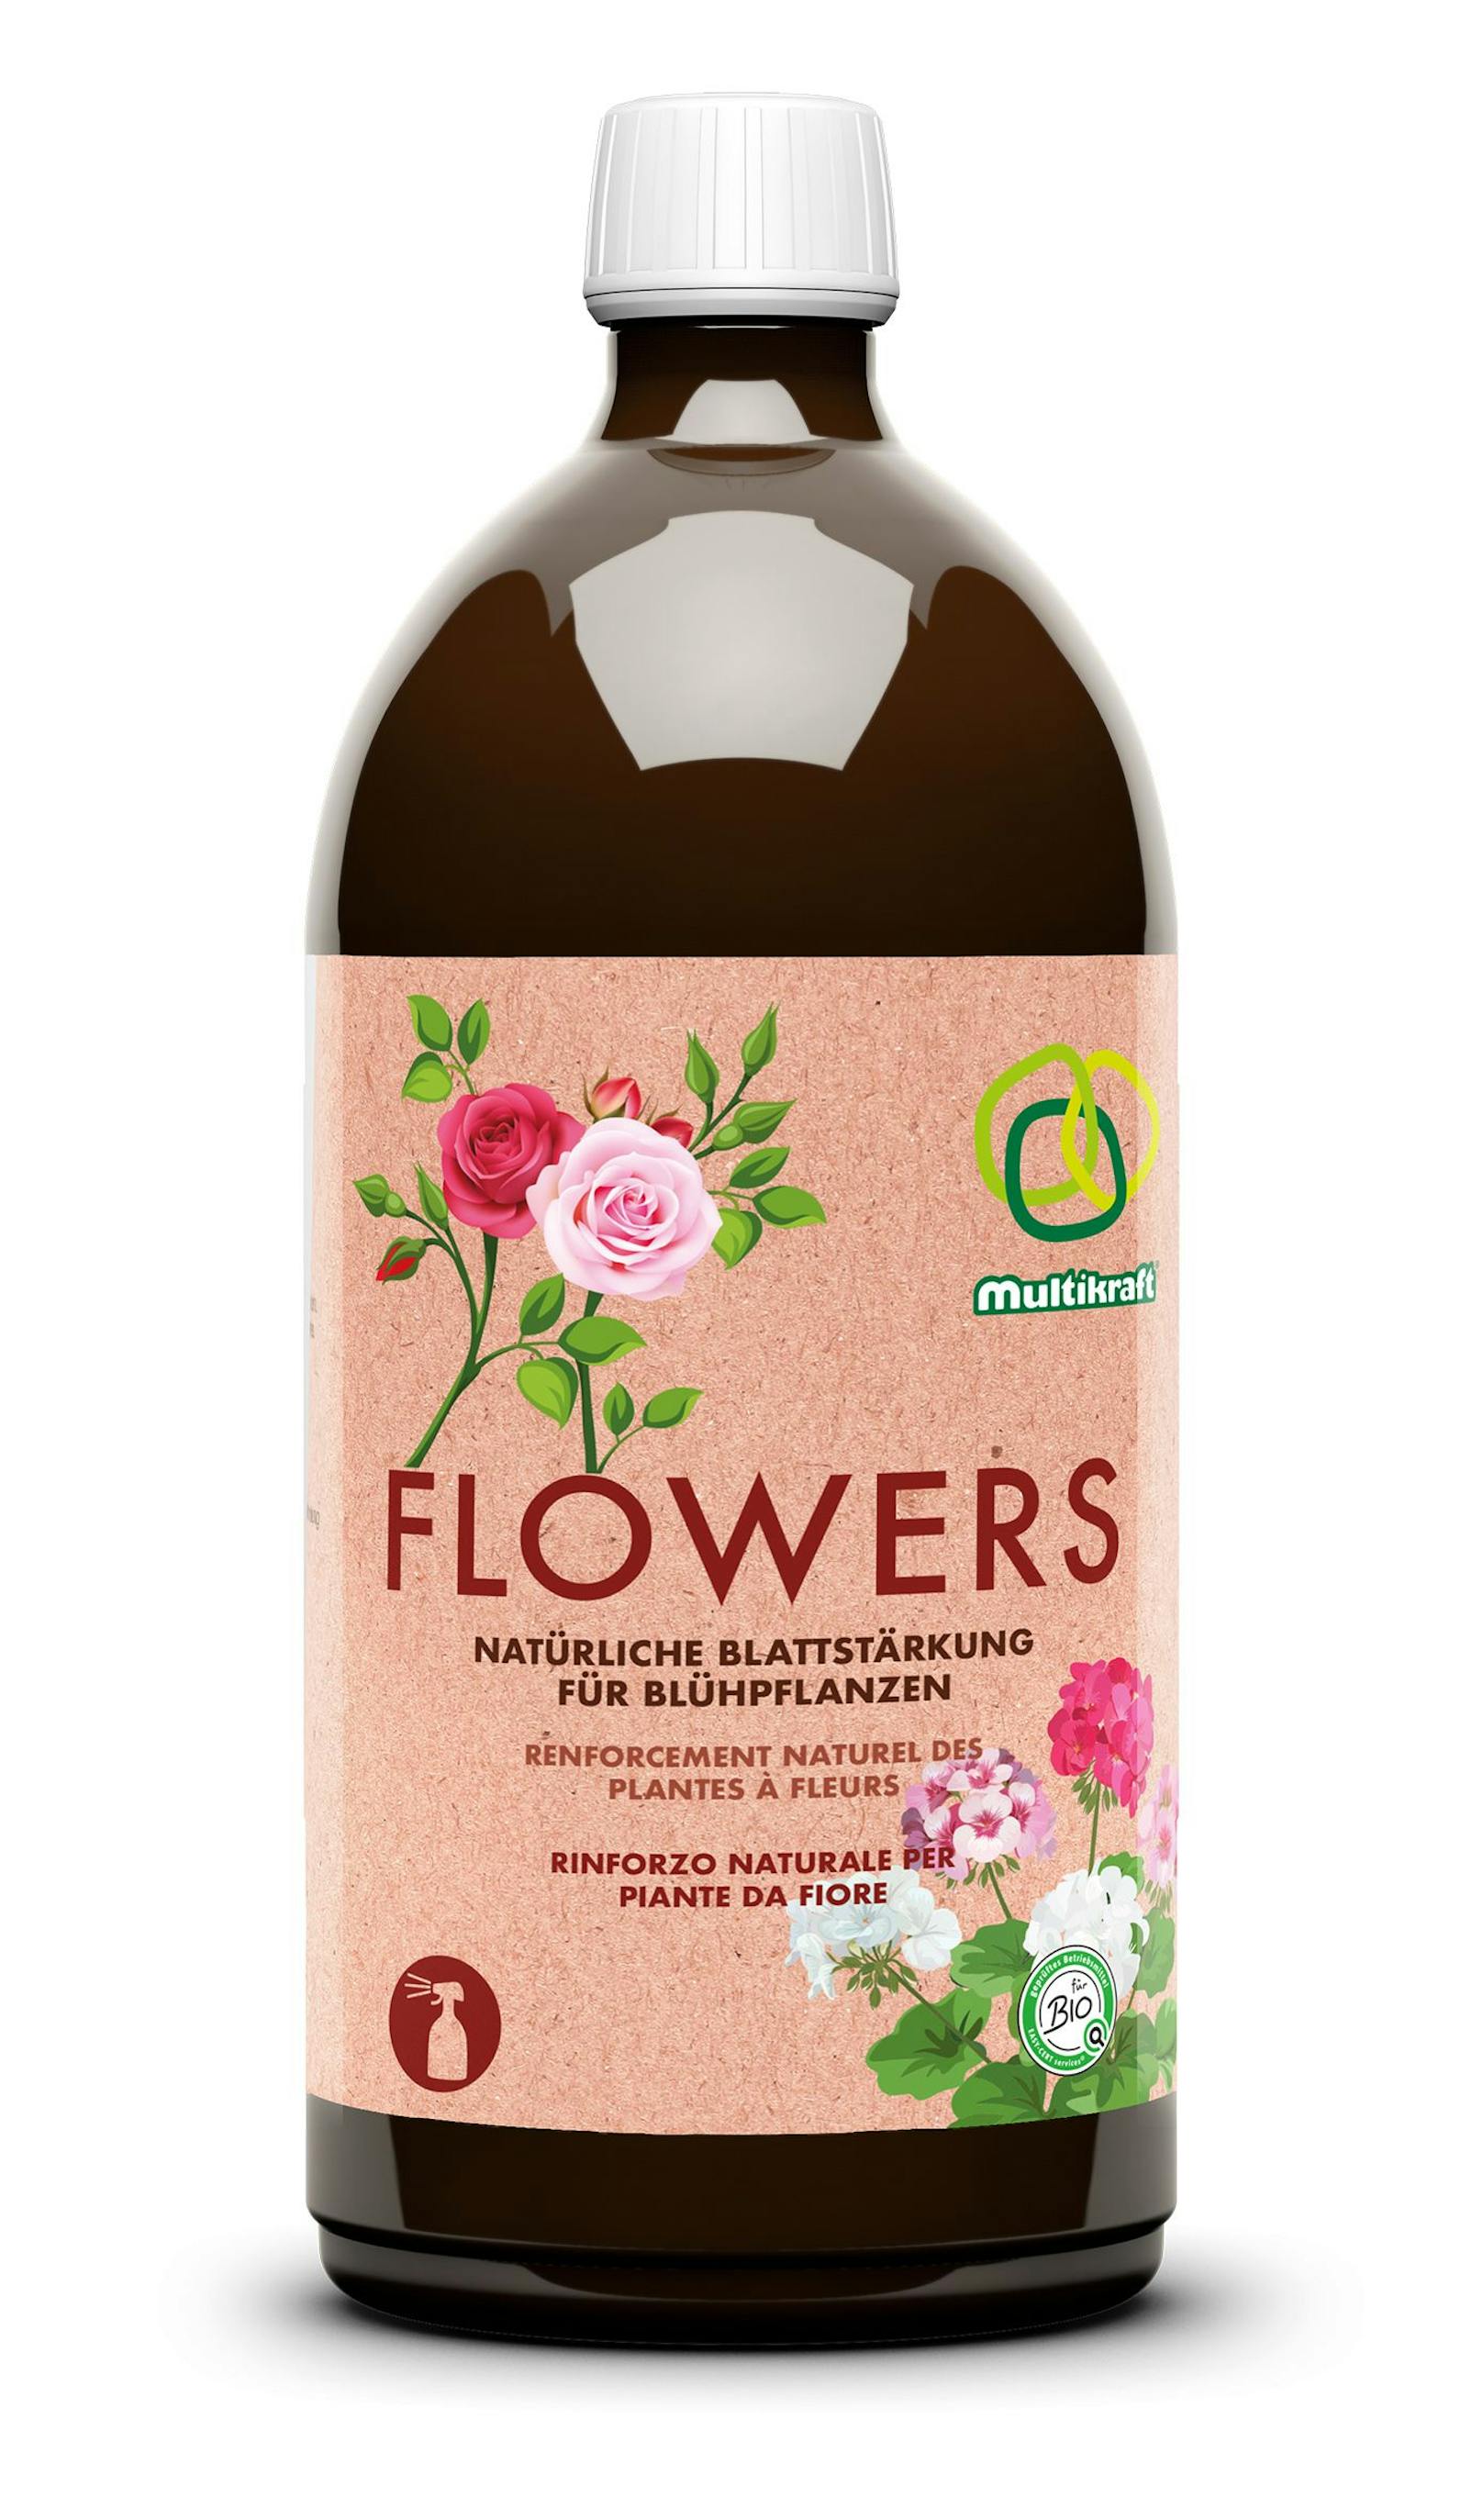 Flowers - natürliche Blattstärkung für Blühpflanzen von Multikraft